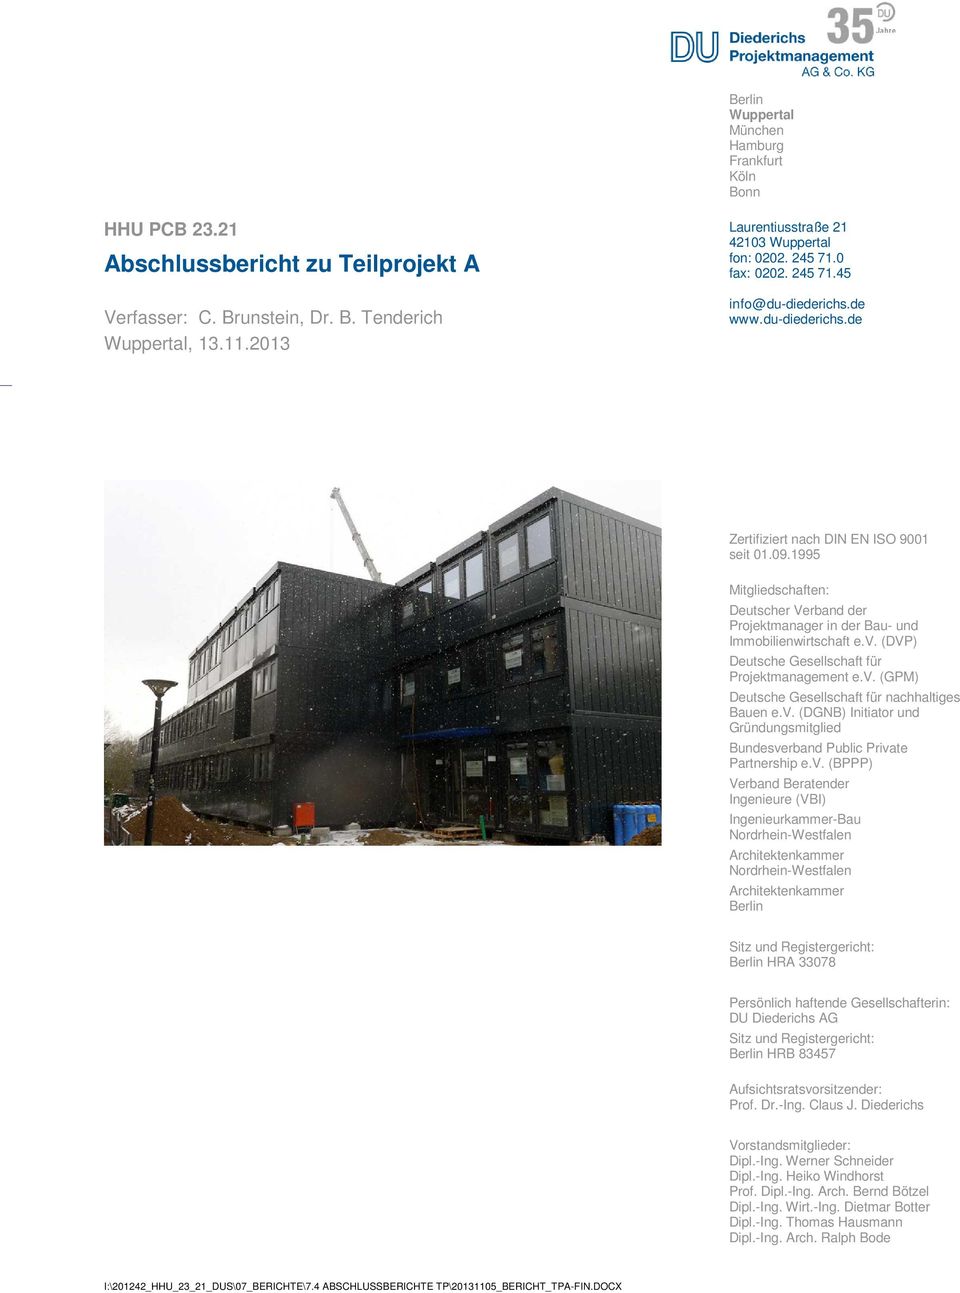 1995 Projektfoto Mitgliedschaften: Deutscher Verband der Projektmanager in der Bau- und Immobilienwirtschaft e.v. (DVP) Deutsche Gesellschaft für Projektmanagement e.v. (GPM) Deutsche Gesellschaft für nachhaltiges Bauen e.